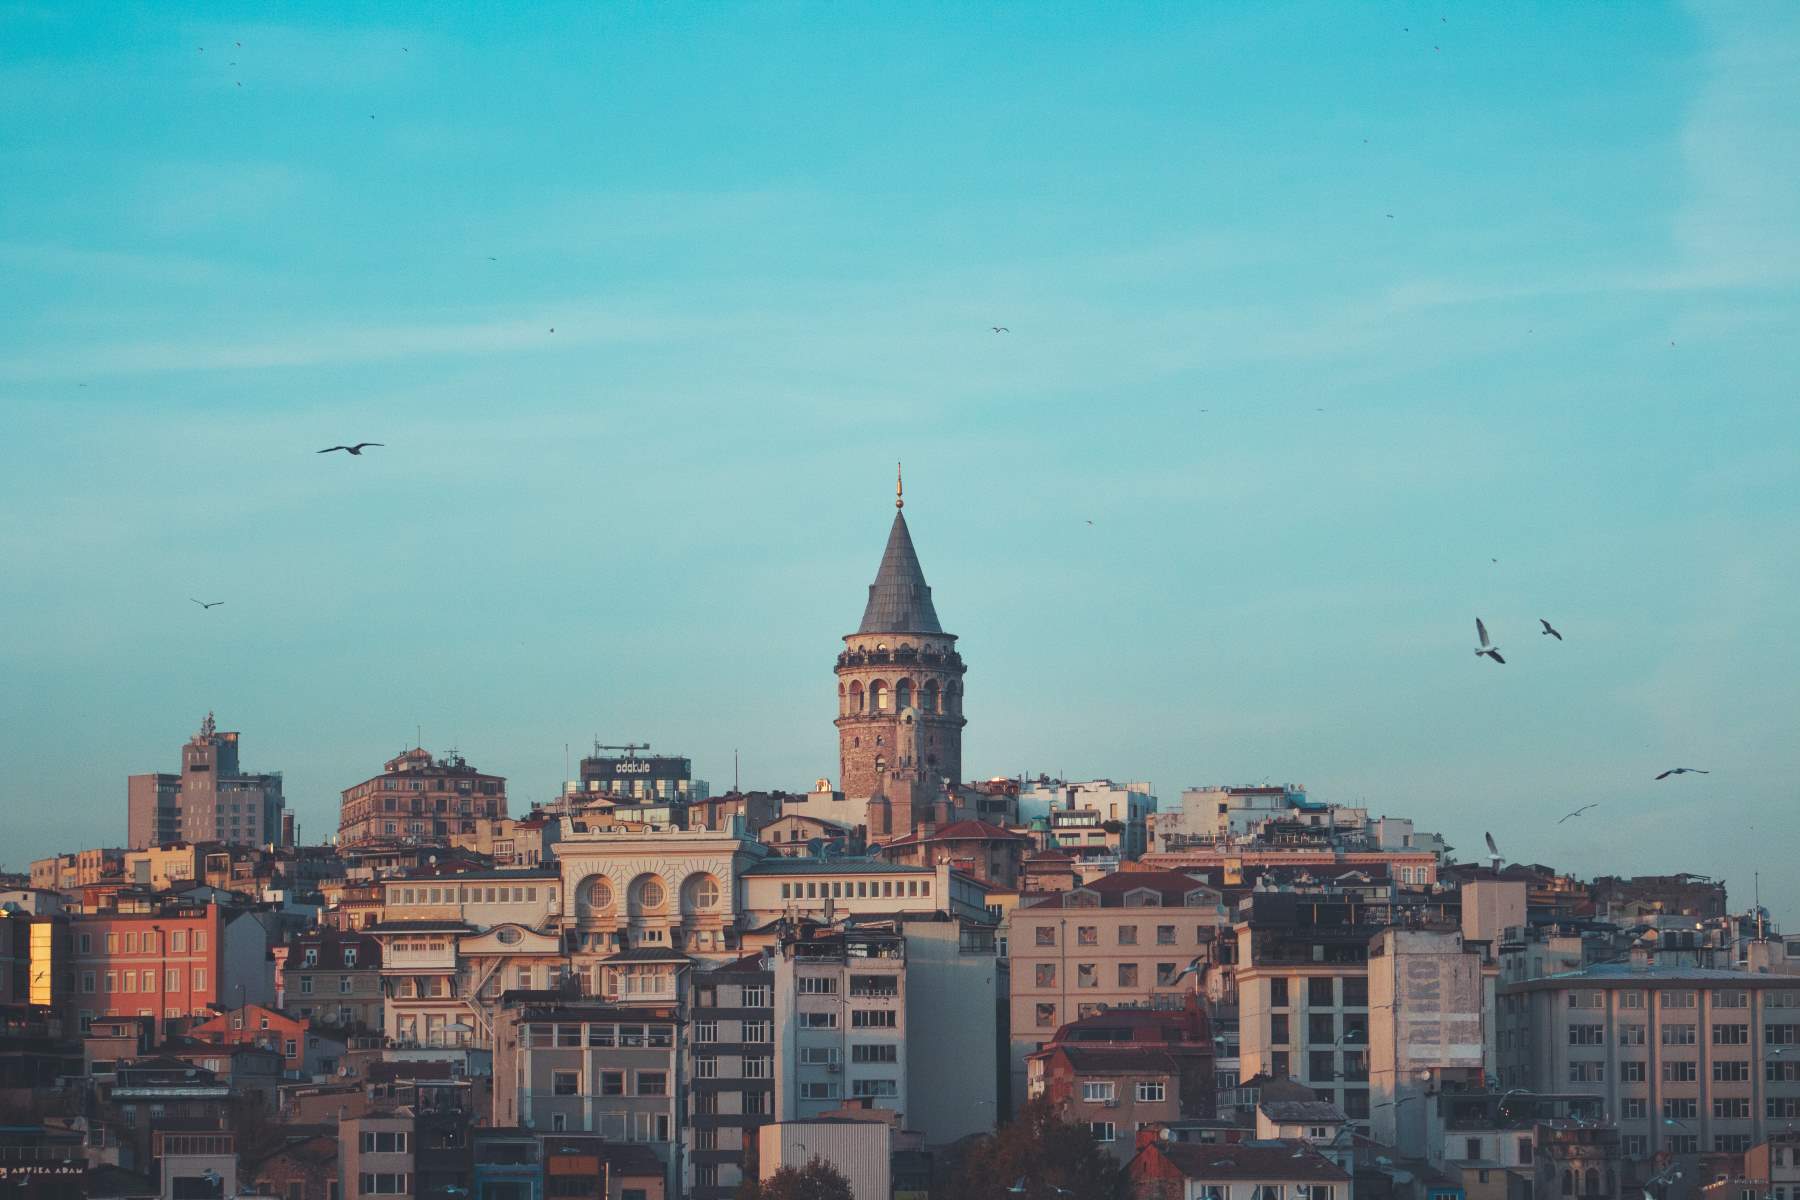 Rejseguide til Istanbul - Rejs Dig Lykkelig